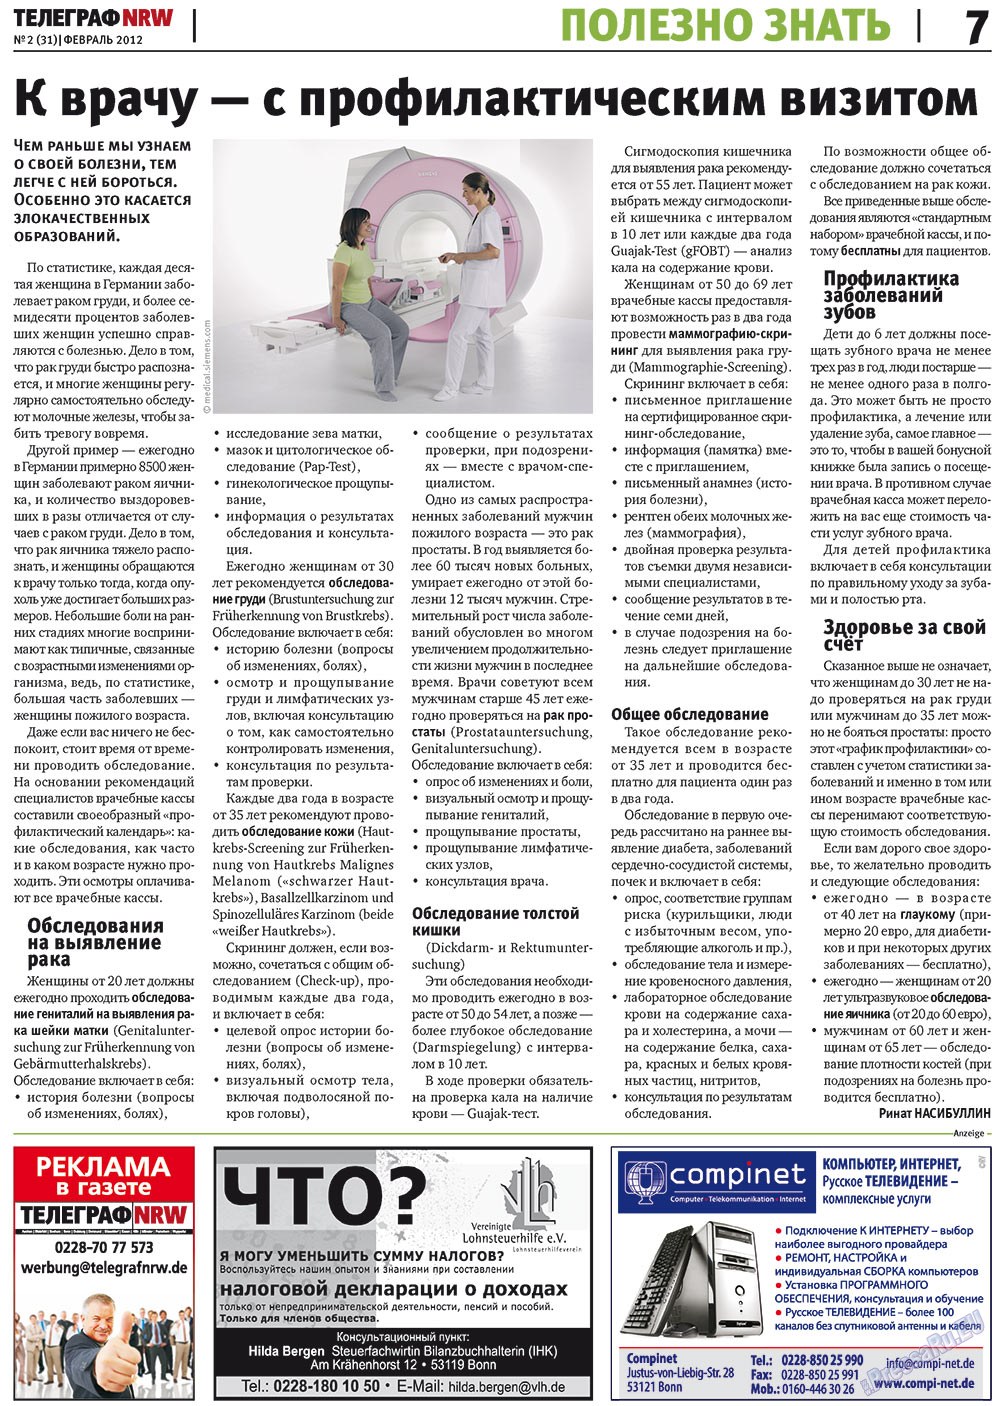 Телеграф NRW (газета). 2012 год, номер 2, стр. 7